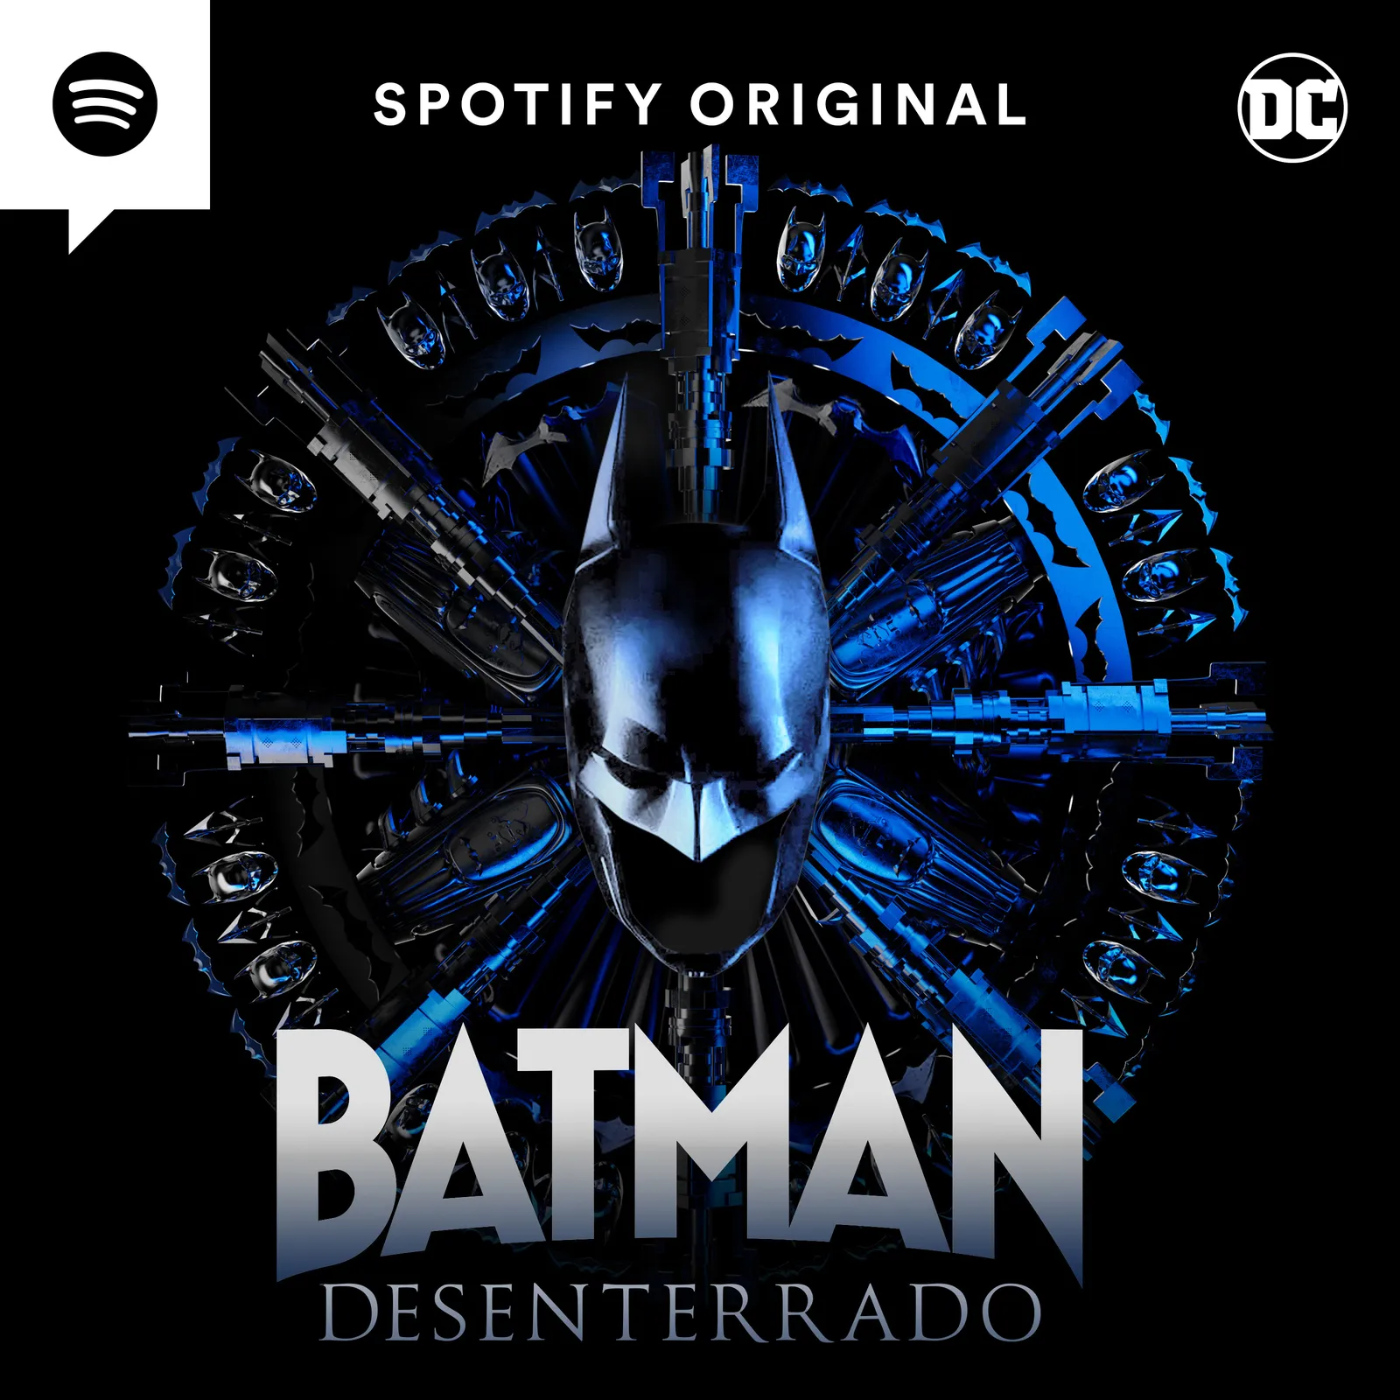 140 - Batman Desenterrado - Resumen, opinión y teorías de los dos primeros  capítulos - El archivo de Gotham - Podcast en iVoox